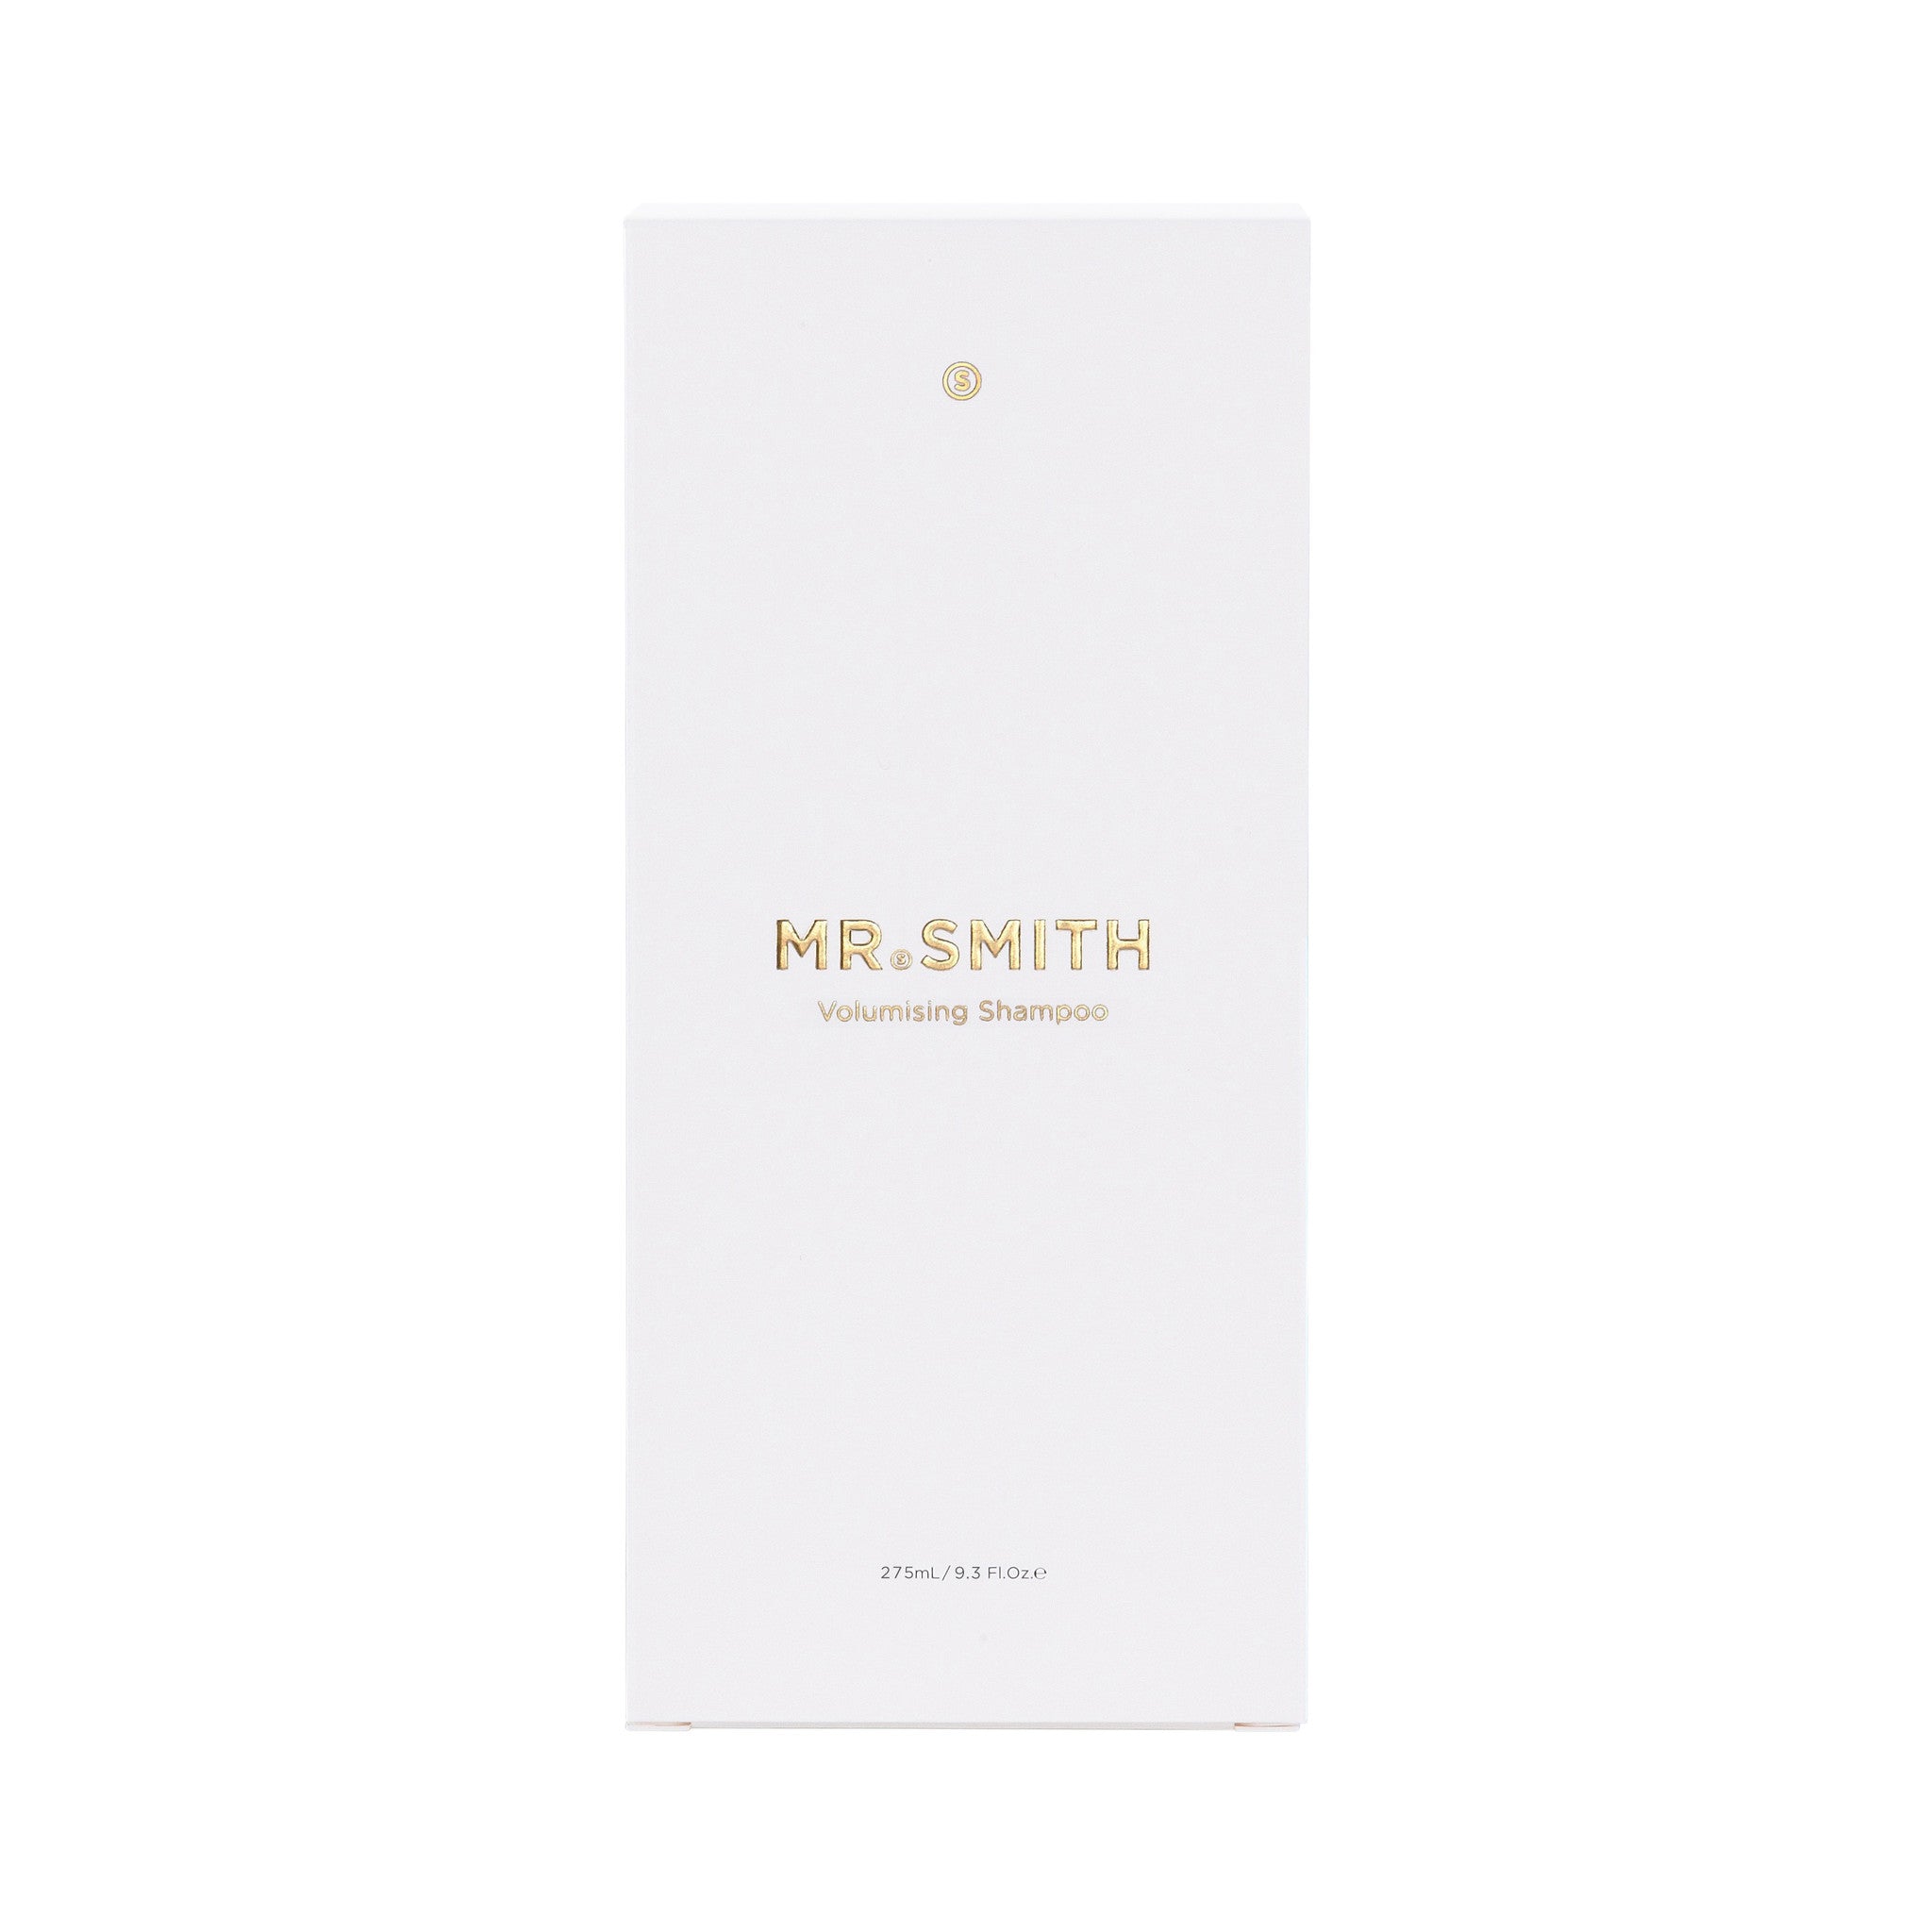 MR. SMITH Volumising Shampoo - 275 ml